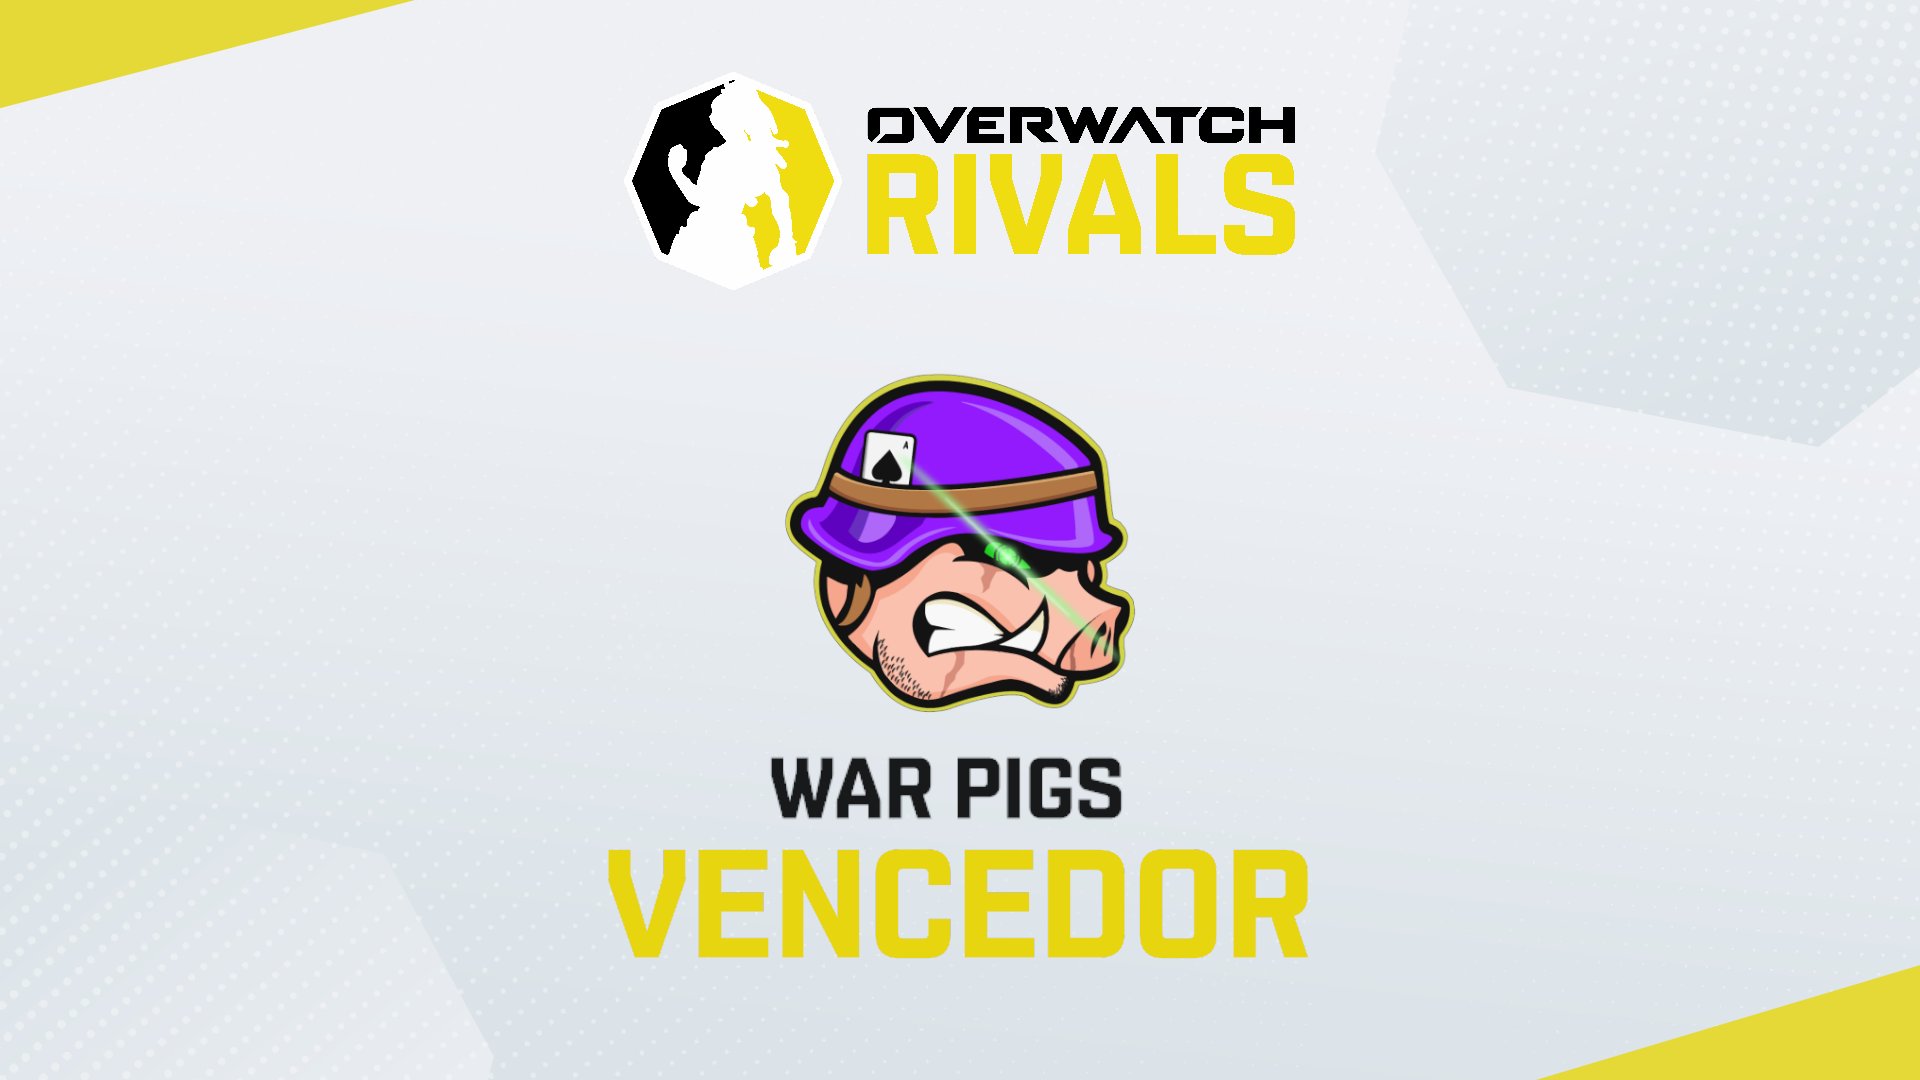 War Pigs Overwatch Team from Brazil